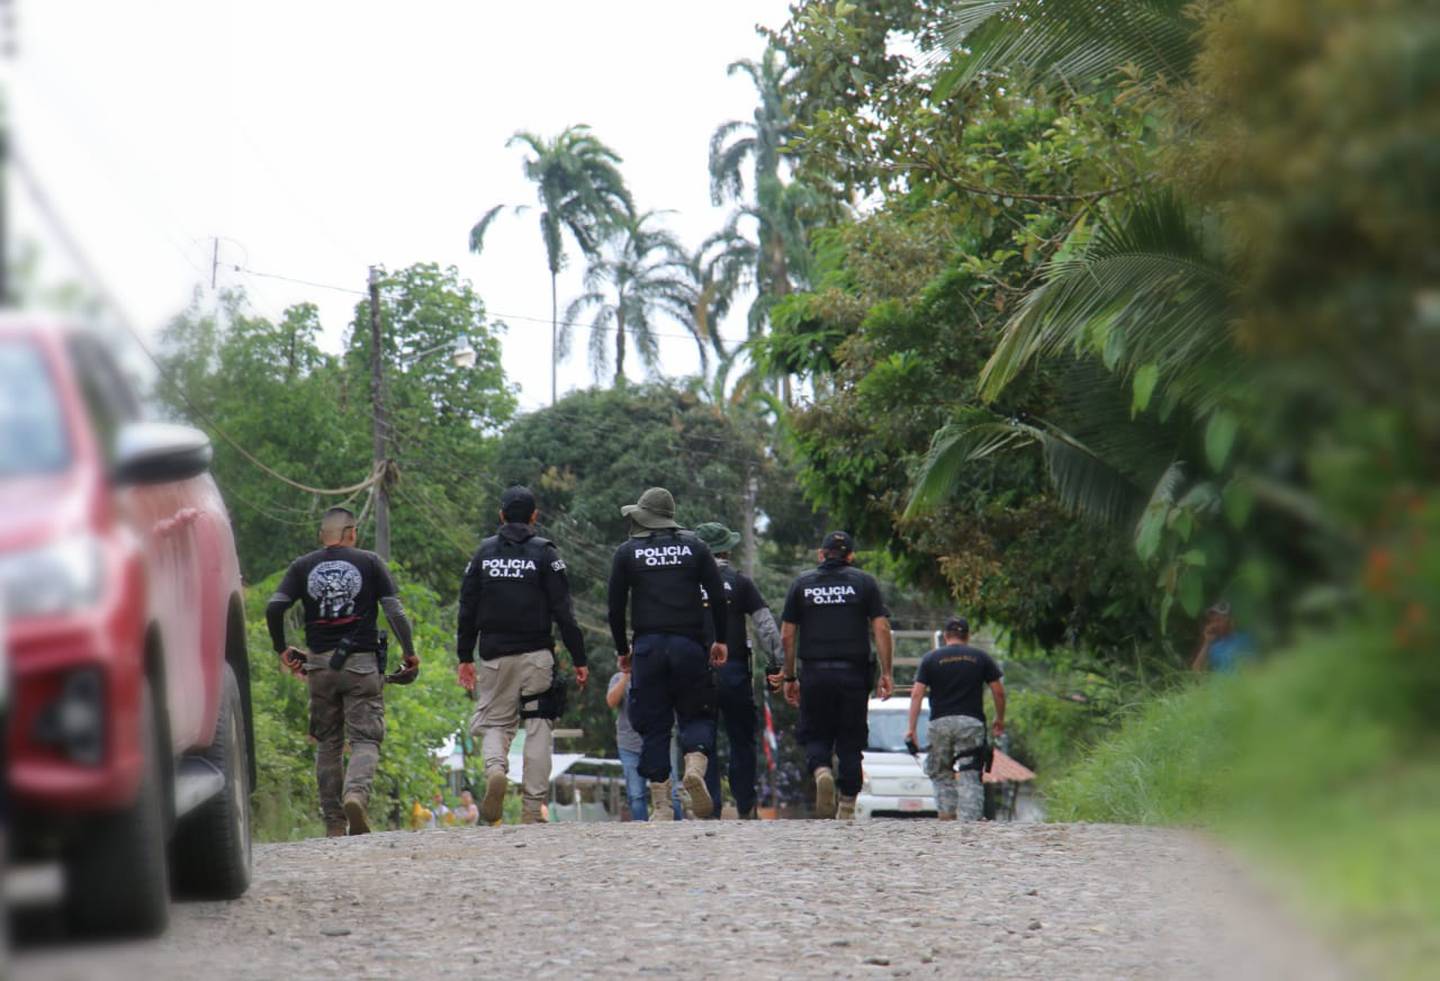 Parte del contingente policial que este semana ha recorrido varias zonas de Sarapiquí para recapturar a un sujeto en fuga.. Foto: Reiner Montero.